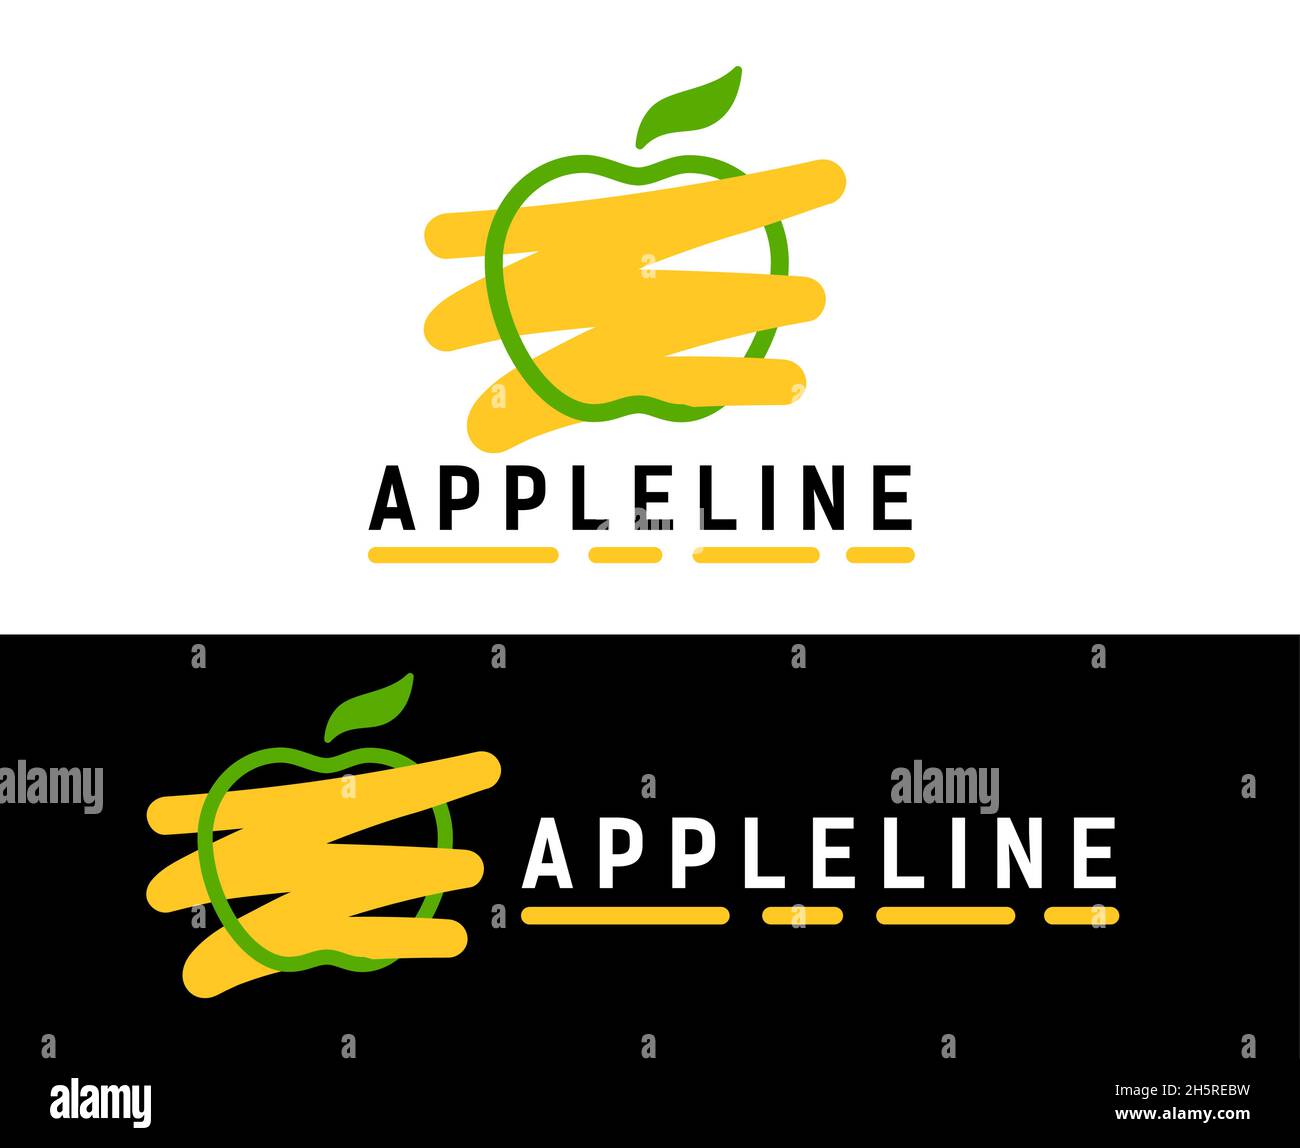 Grüner linearer Apfel, gelb gefärbt. Logo-Konzept für gesunde Lebensmittel oder landwirtschaftliche Unternehmen. Stock Vektor